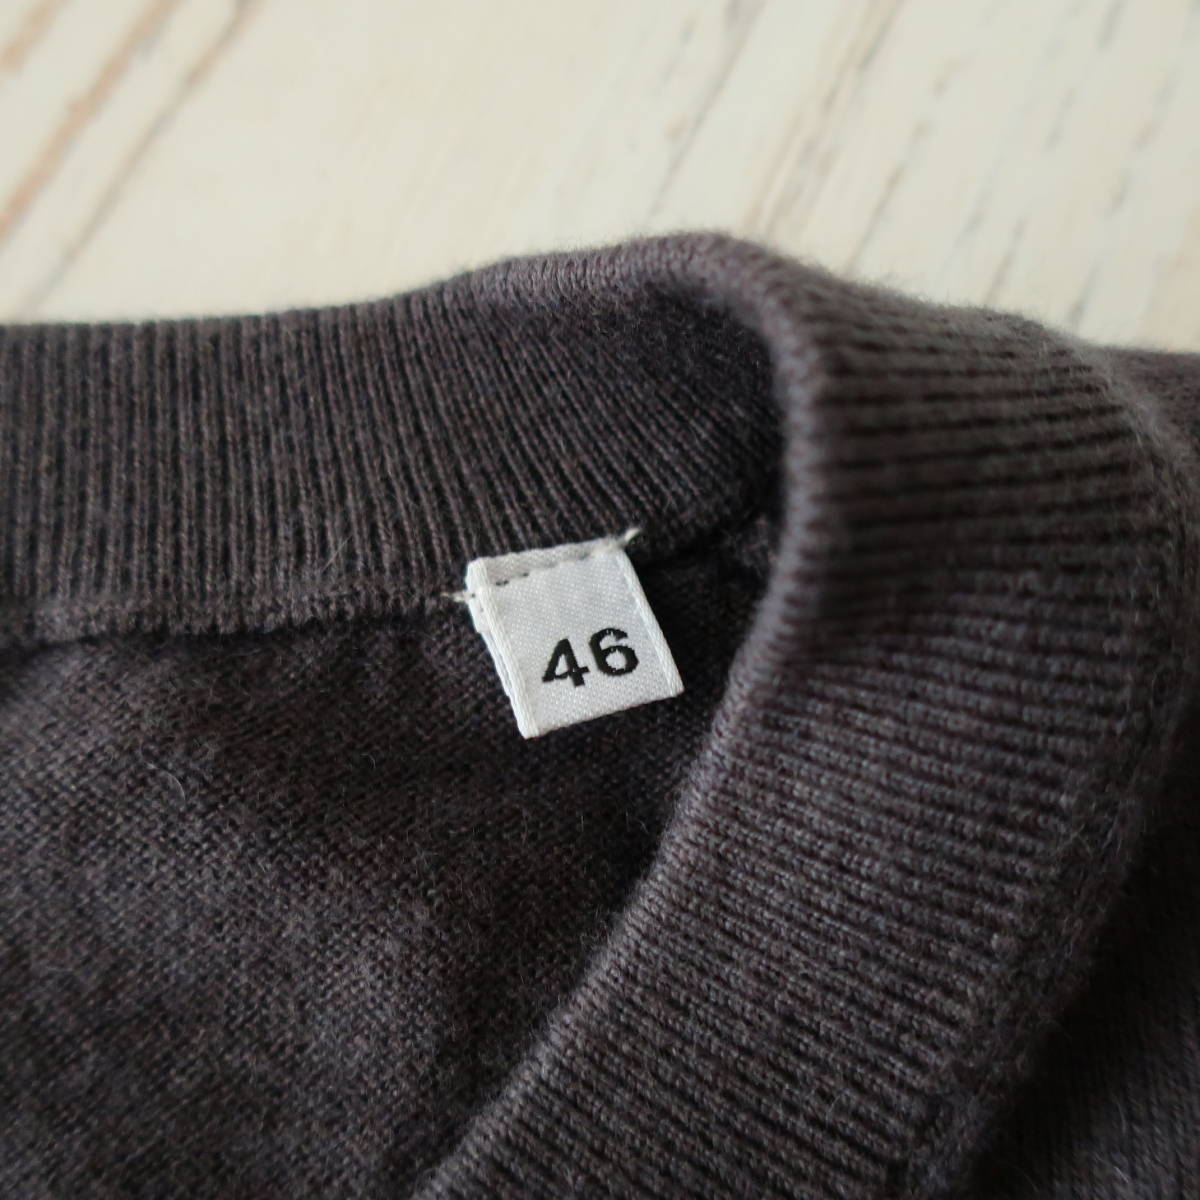  не использовался ASPESIa spec ji кашемир . шерсть вязаный свитер V шея бизнес casual тонкий длинный рукав мужской голубой серый 46 M размер 